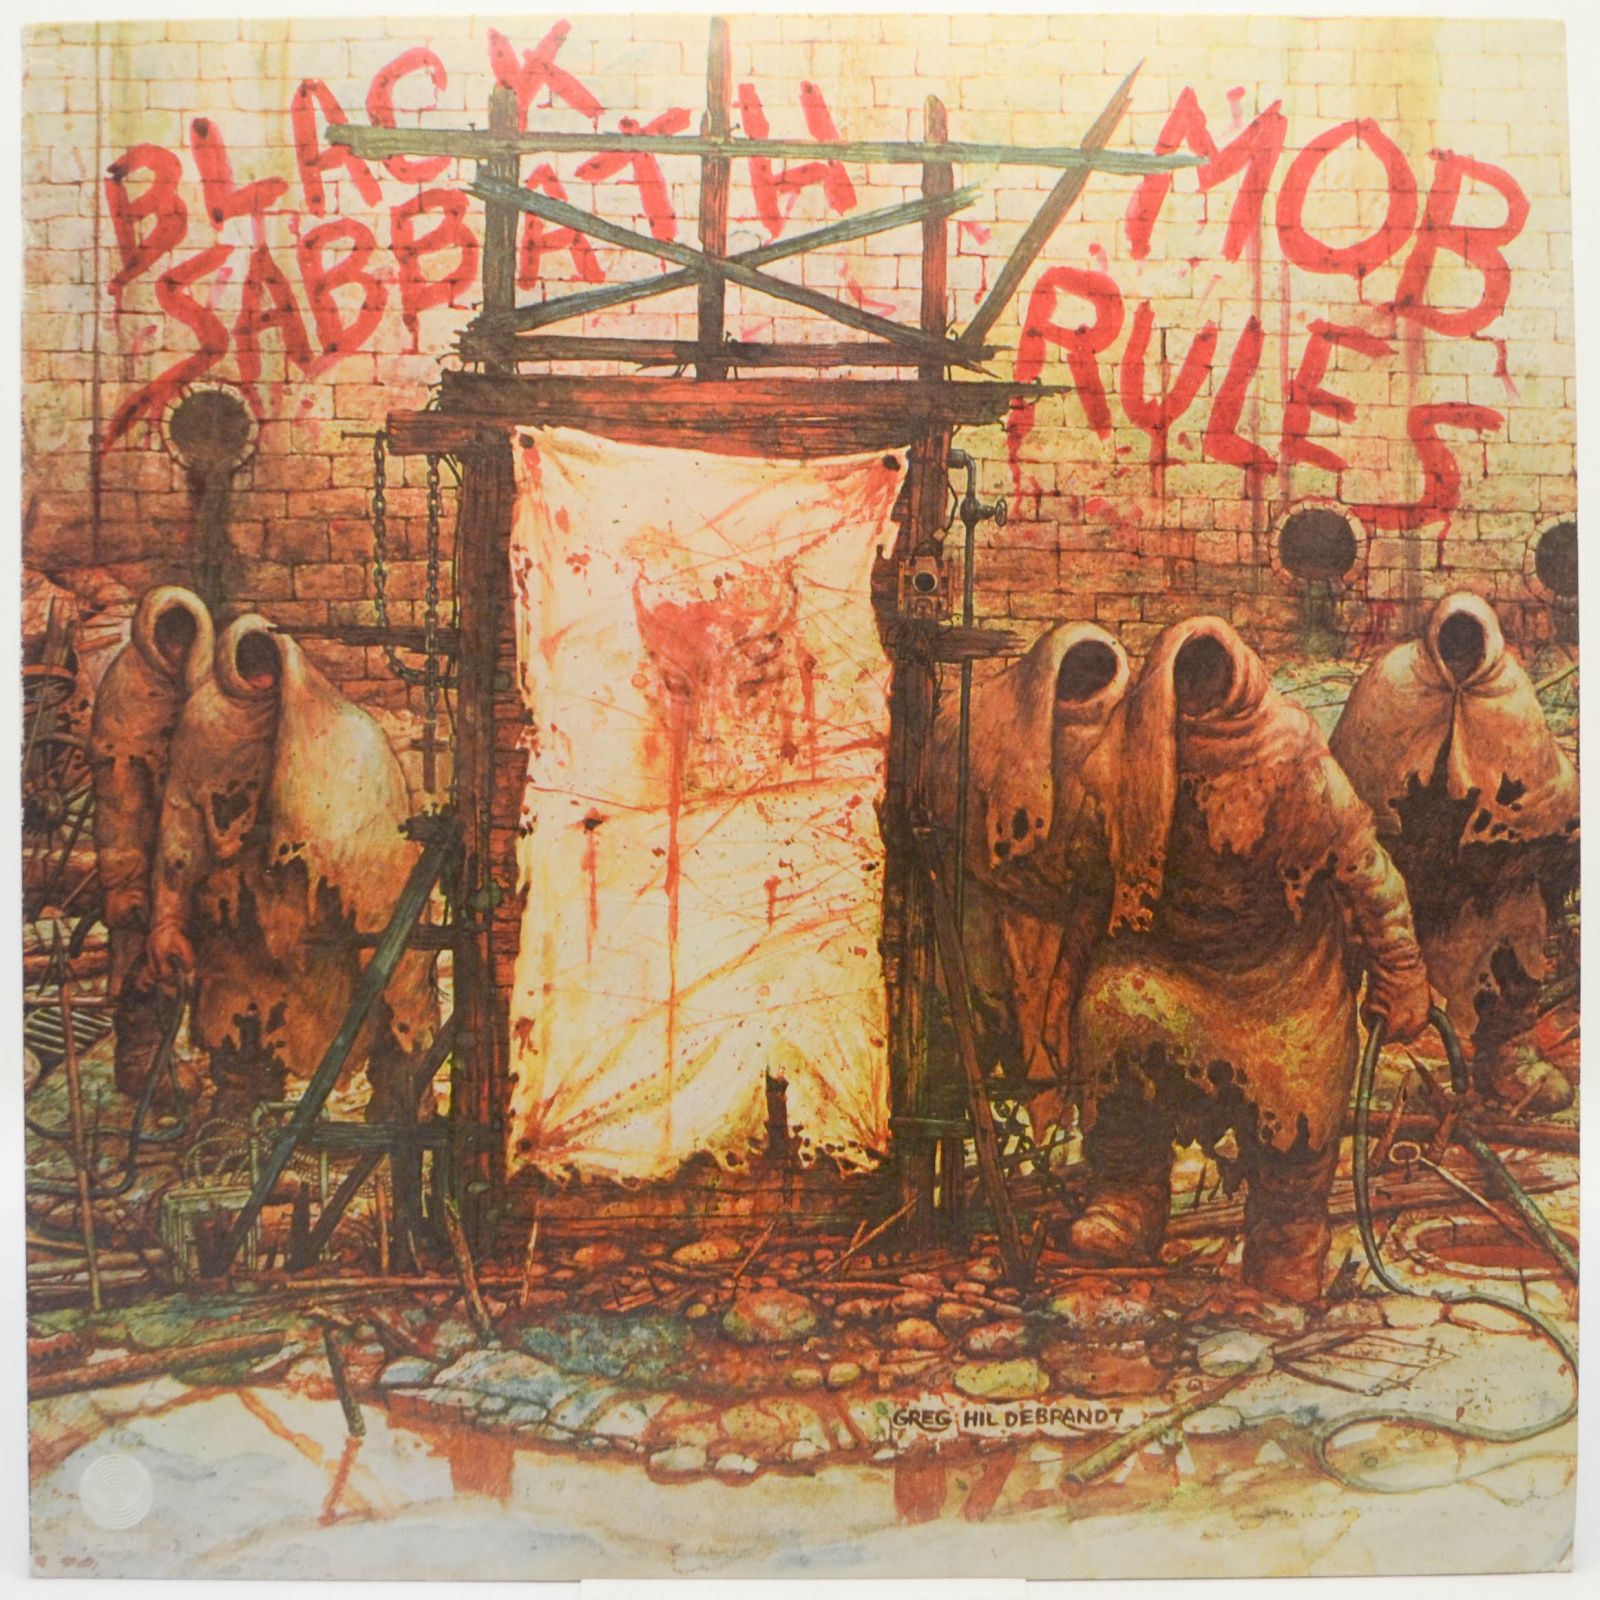 Mob Rules, 1981